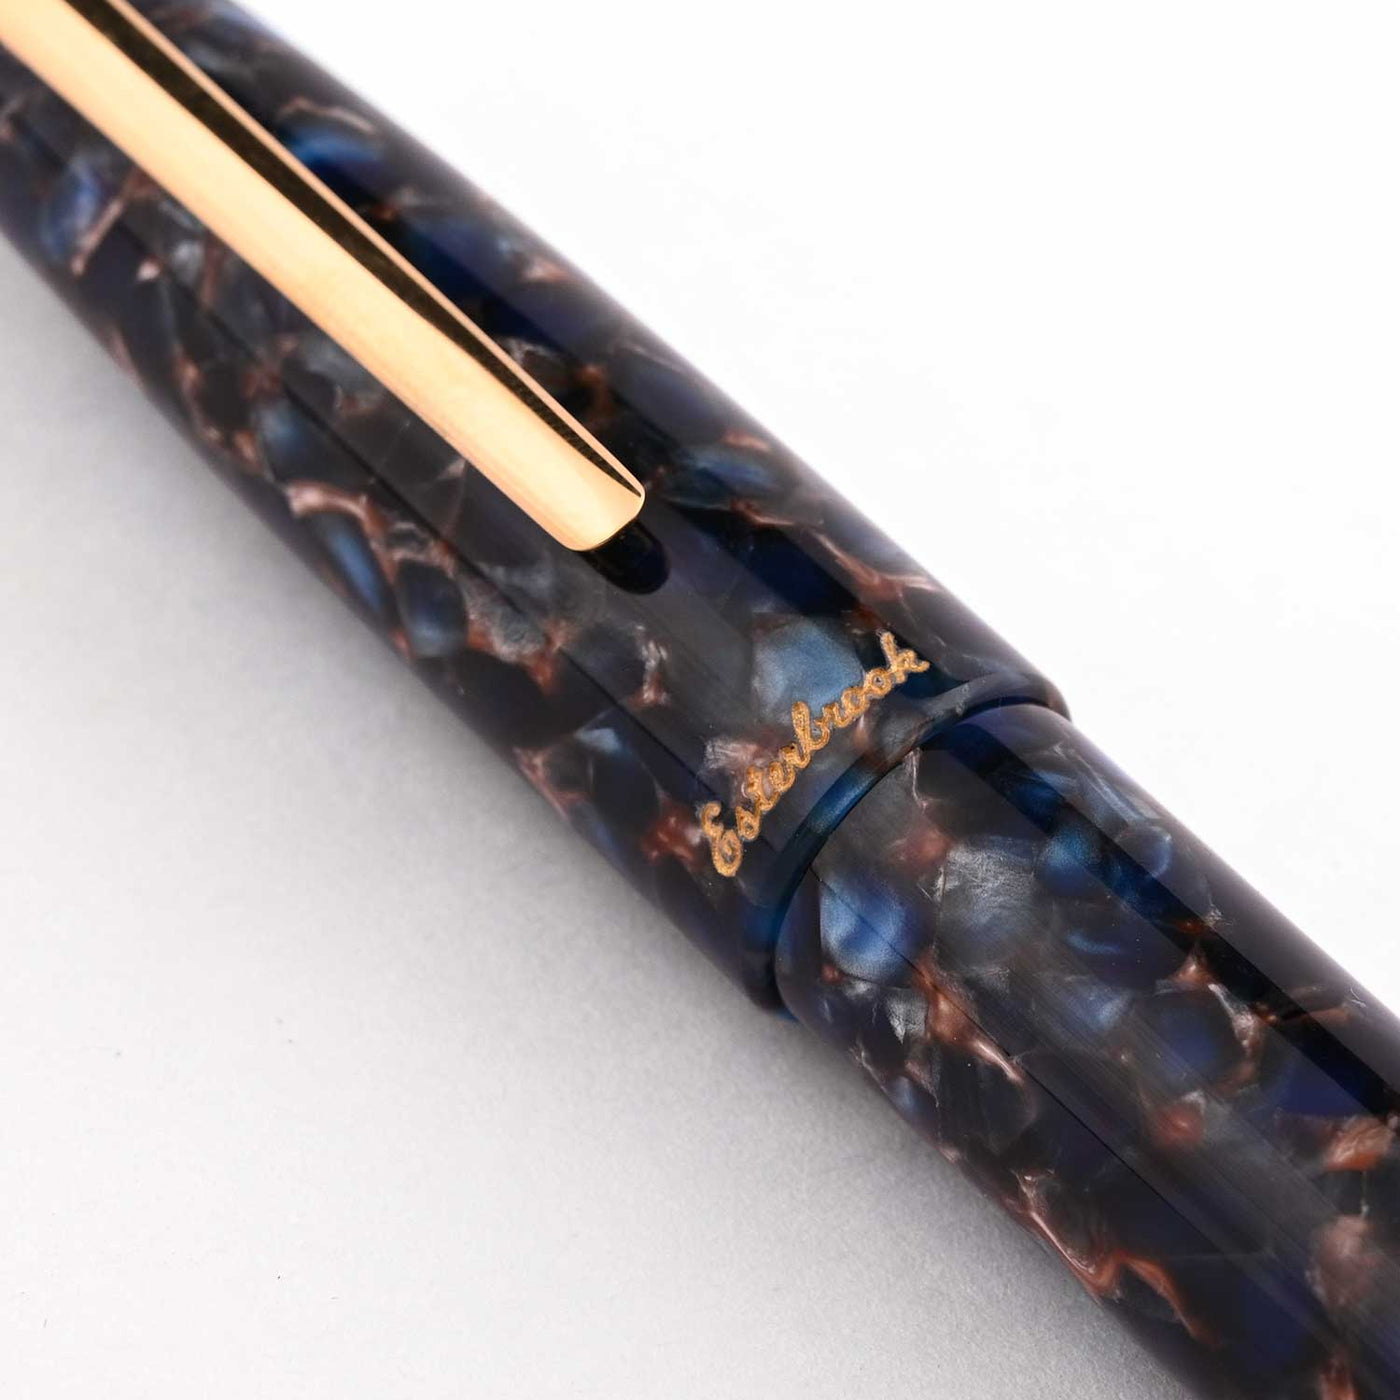 Esterbrook Estie Oversize Fountain Pen - Nouveau Blue GT 4